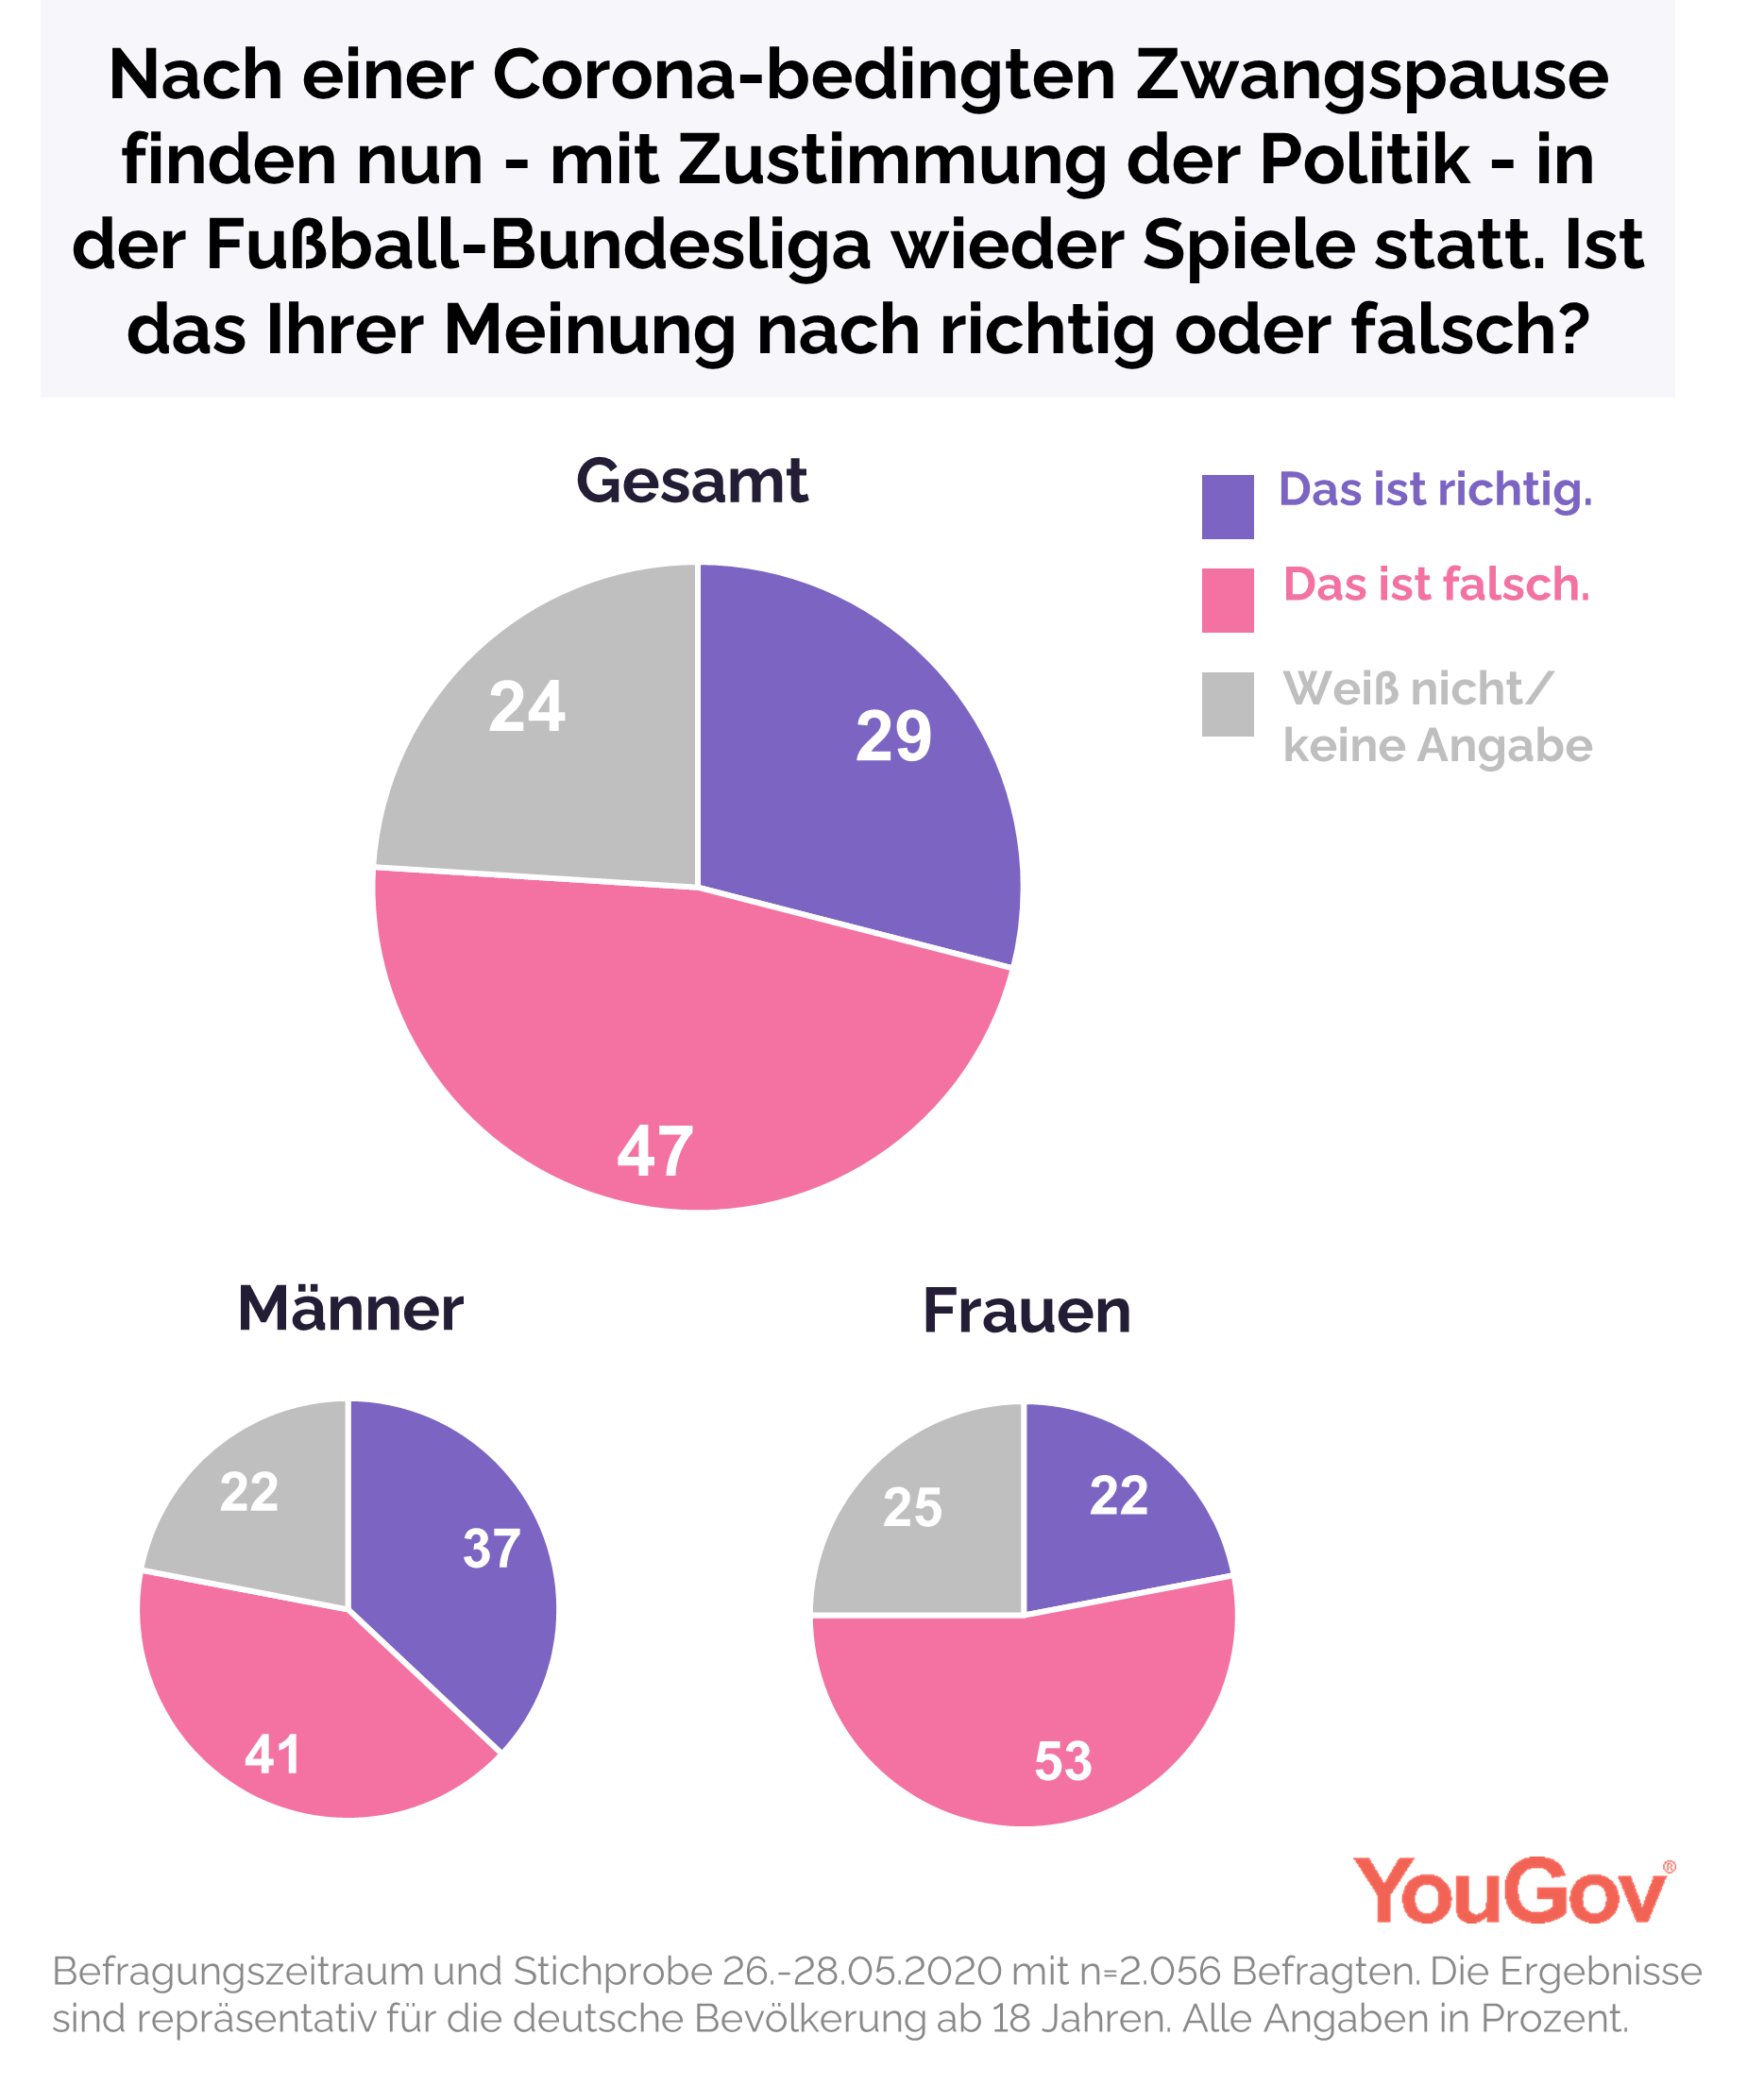 YouGov  Fast die Hälfte gegen Austragung von BundesligaSpielen